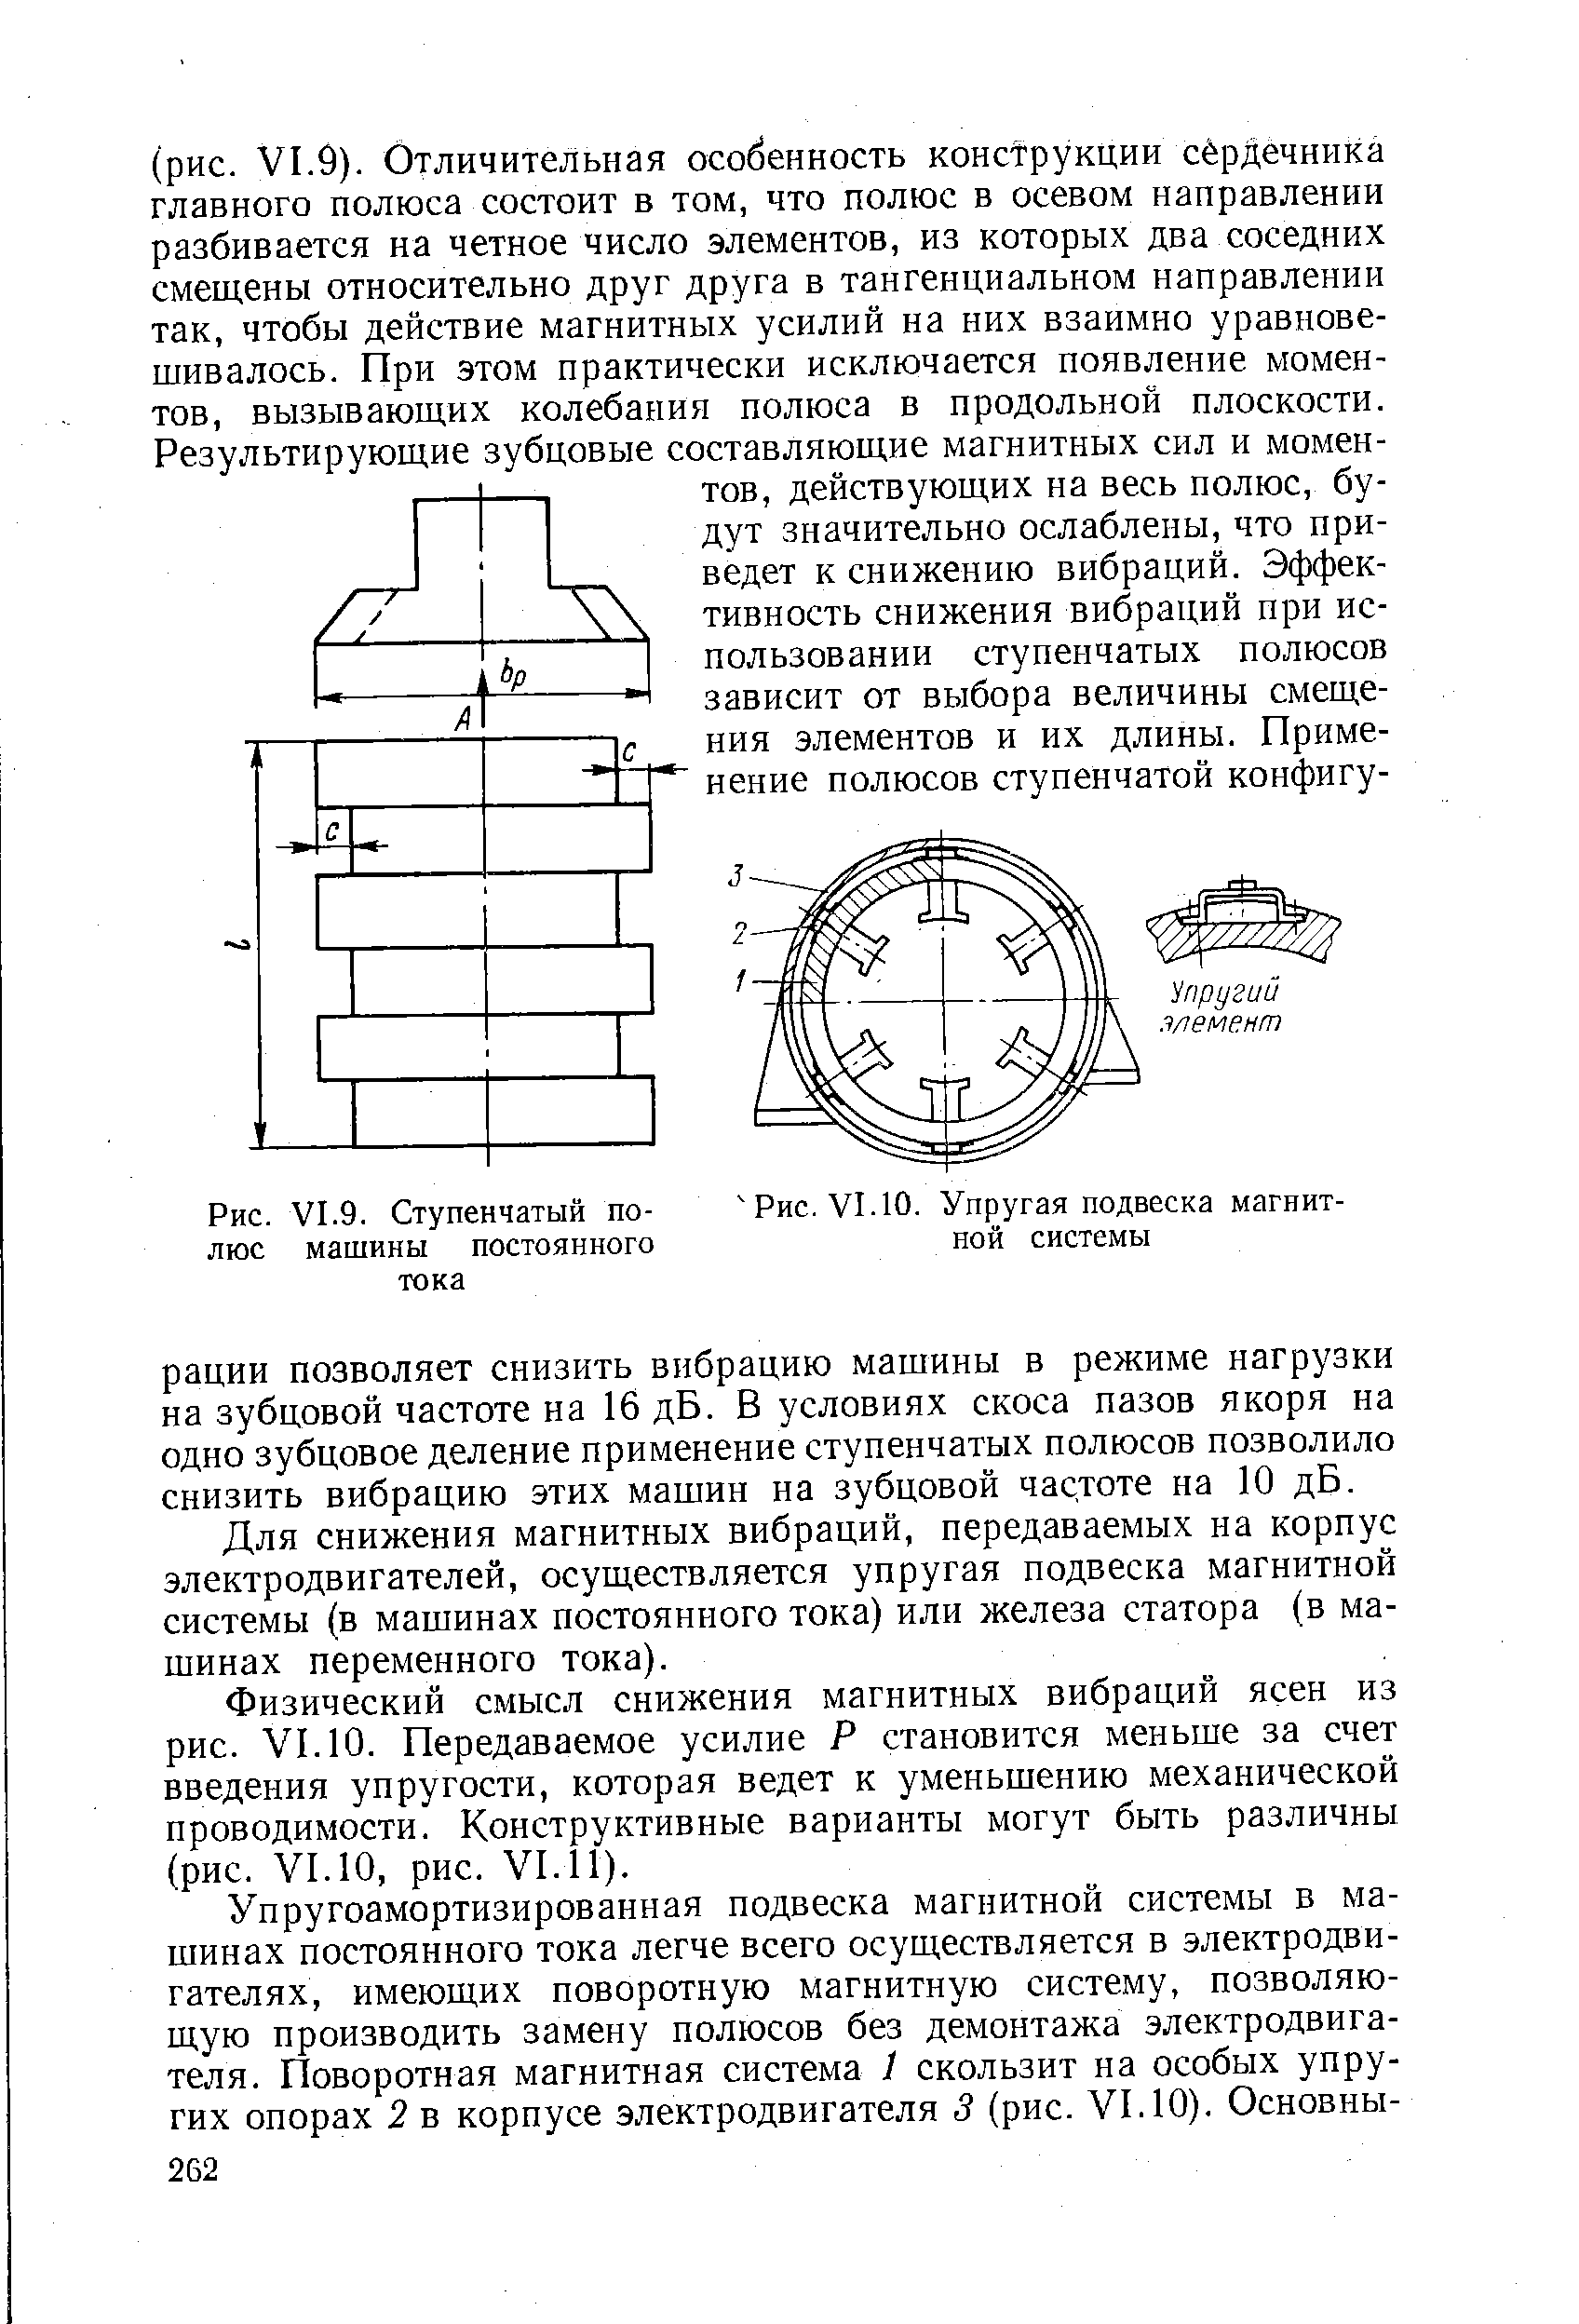 Рис. VI. 10. Упругая подвеска магнитной системы
